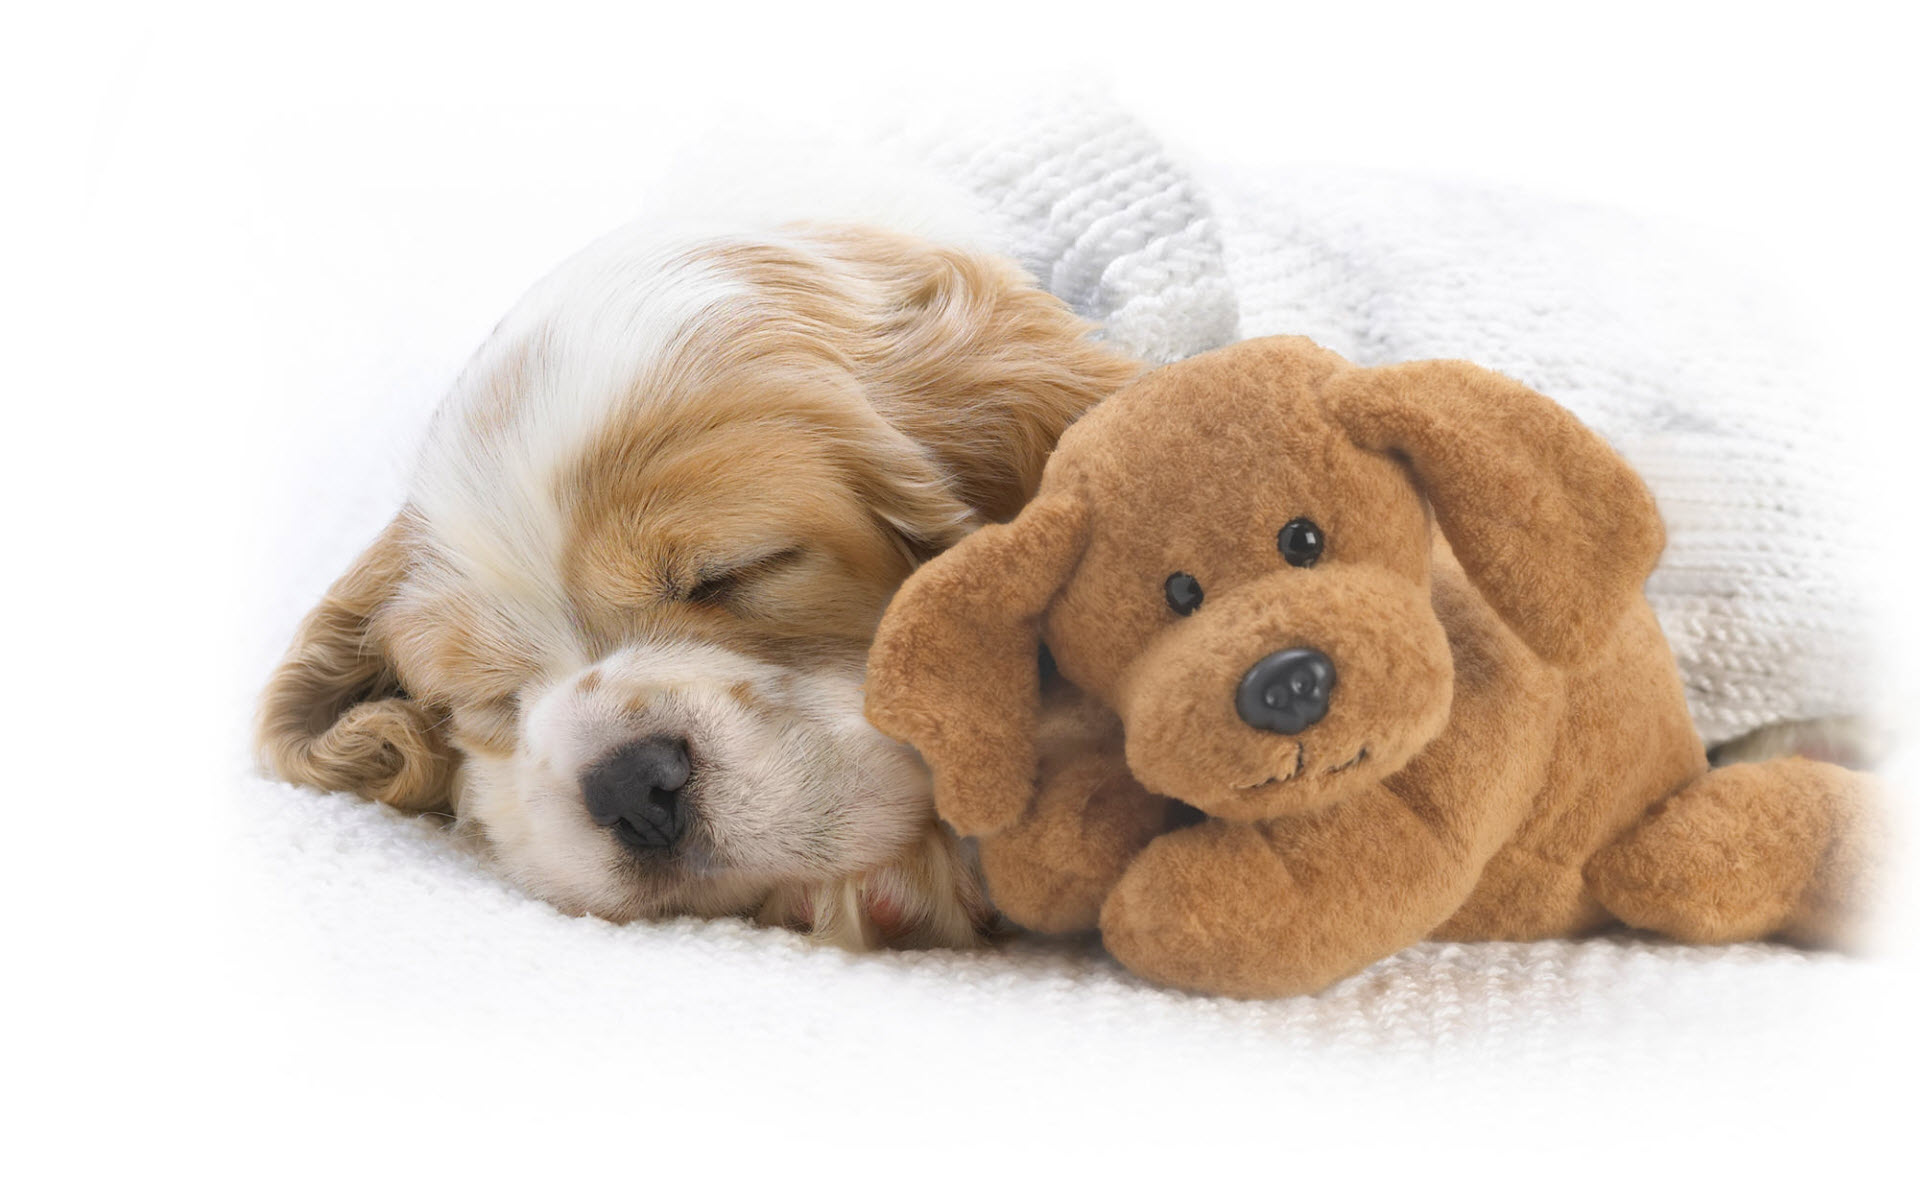 Animal Cute Dog Puppy Sleeping Stuffed Animal Toy 1920x1200